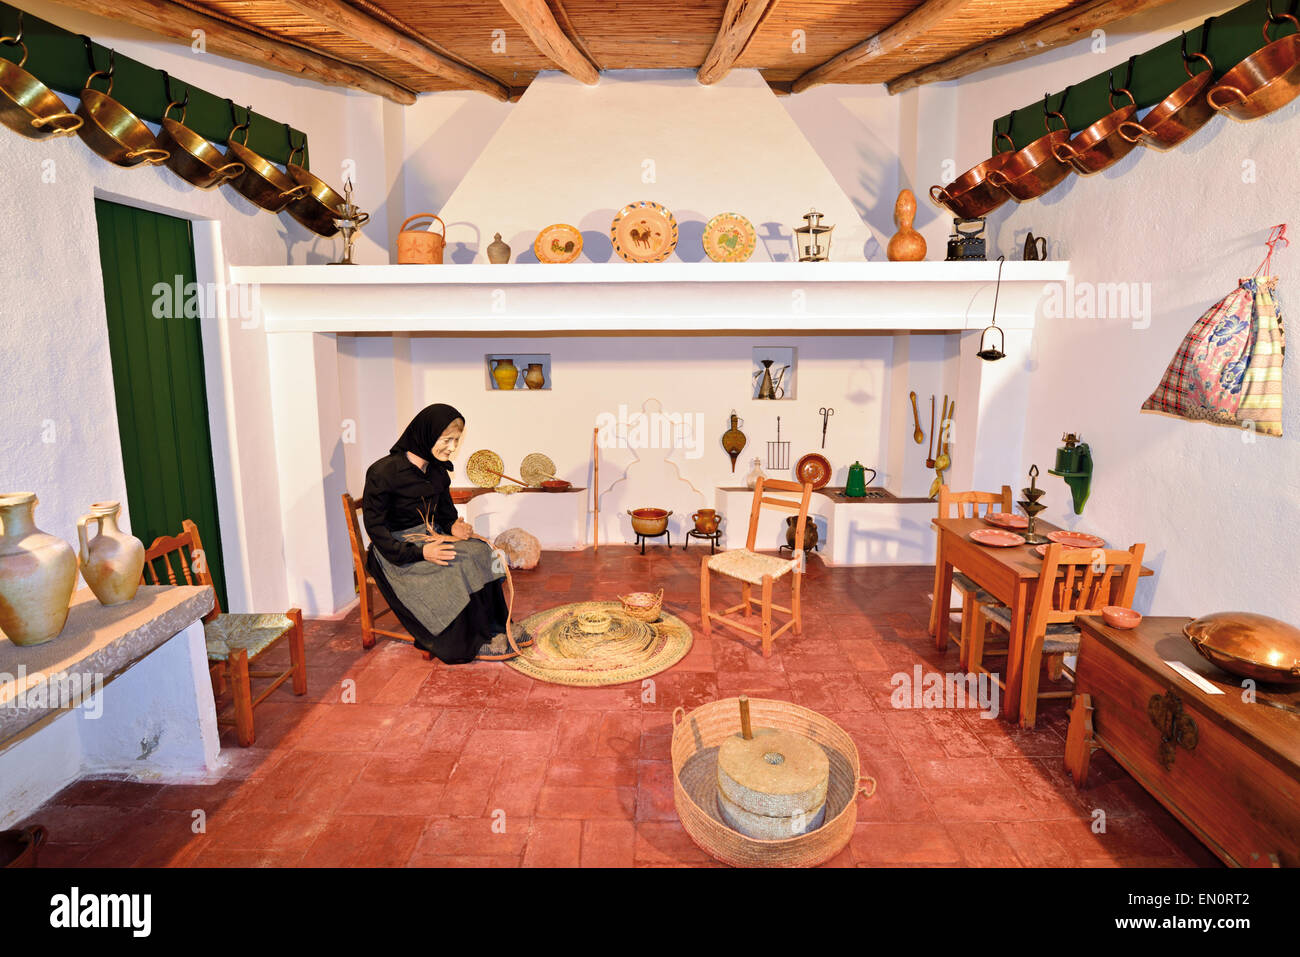 Le Portugal, l'Algarve : Exemple d'une cuisine traditionnelle de l'algarve dans le Musée Ethnographique régional de Faro Banque D'Images